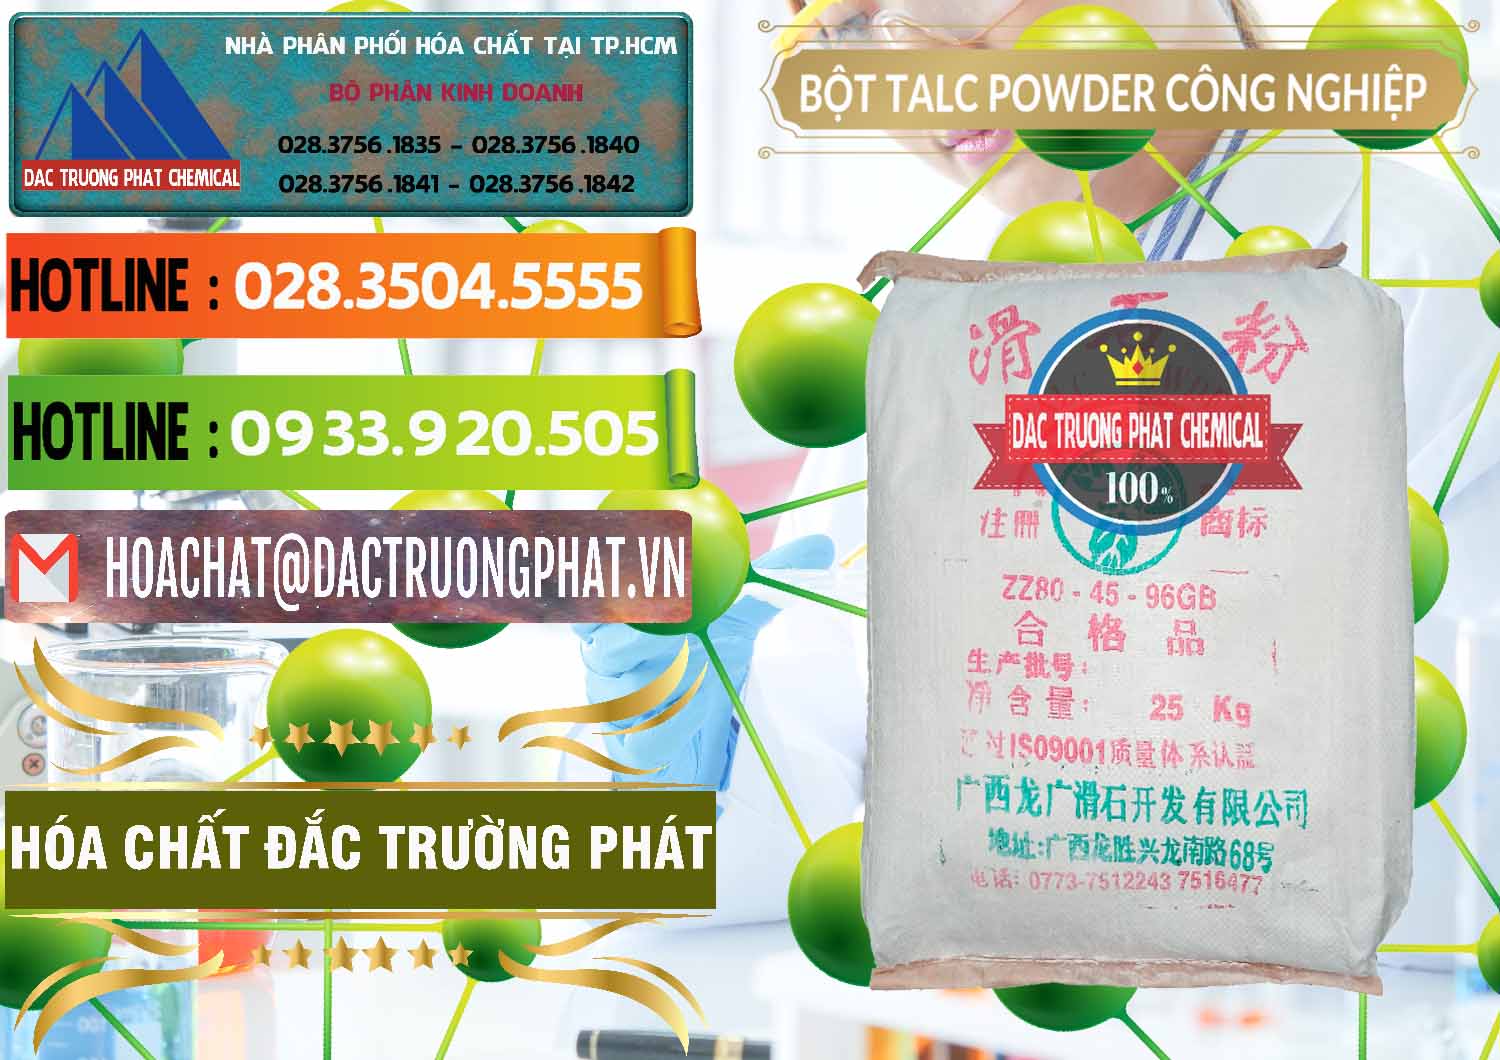 Nơi kinh doanh và bán Bột Talc Powder Công Nghiệp Trung Quốc China - 0037 - Đơn vị chuyên nhập khẩu & cung cấp hóa chất tại TP.HCM - cungcaphoachat.com.vn